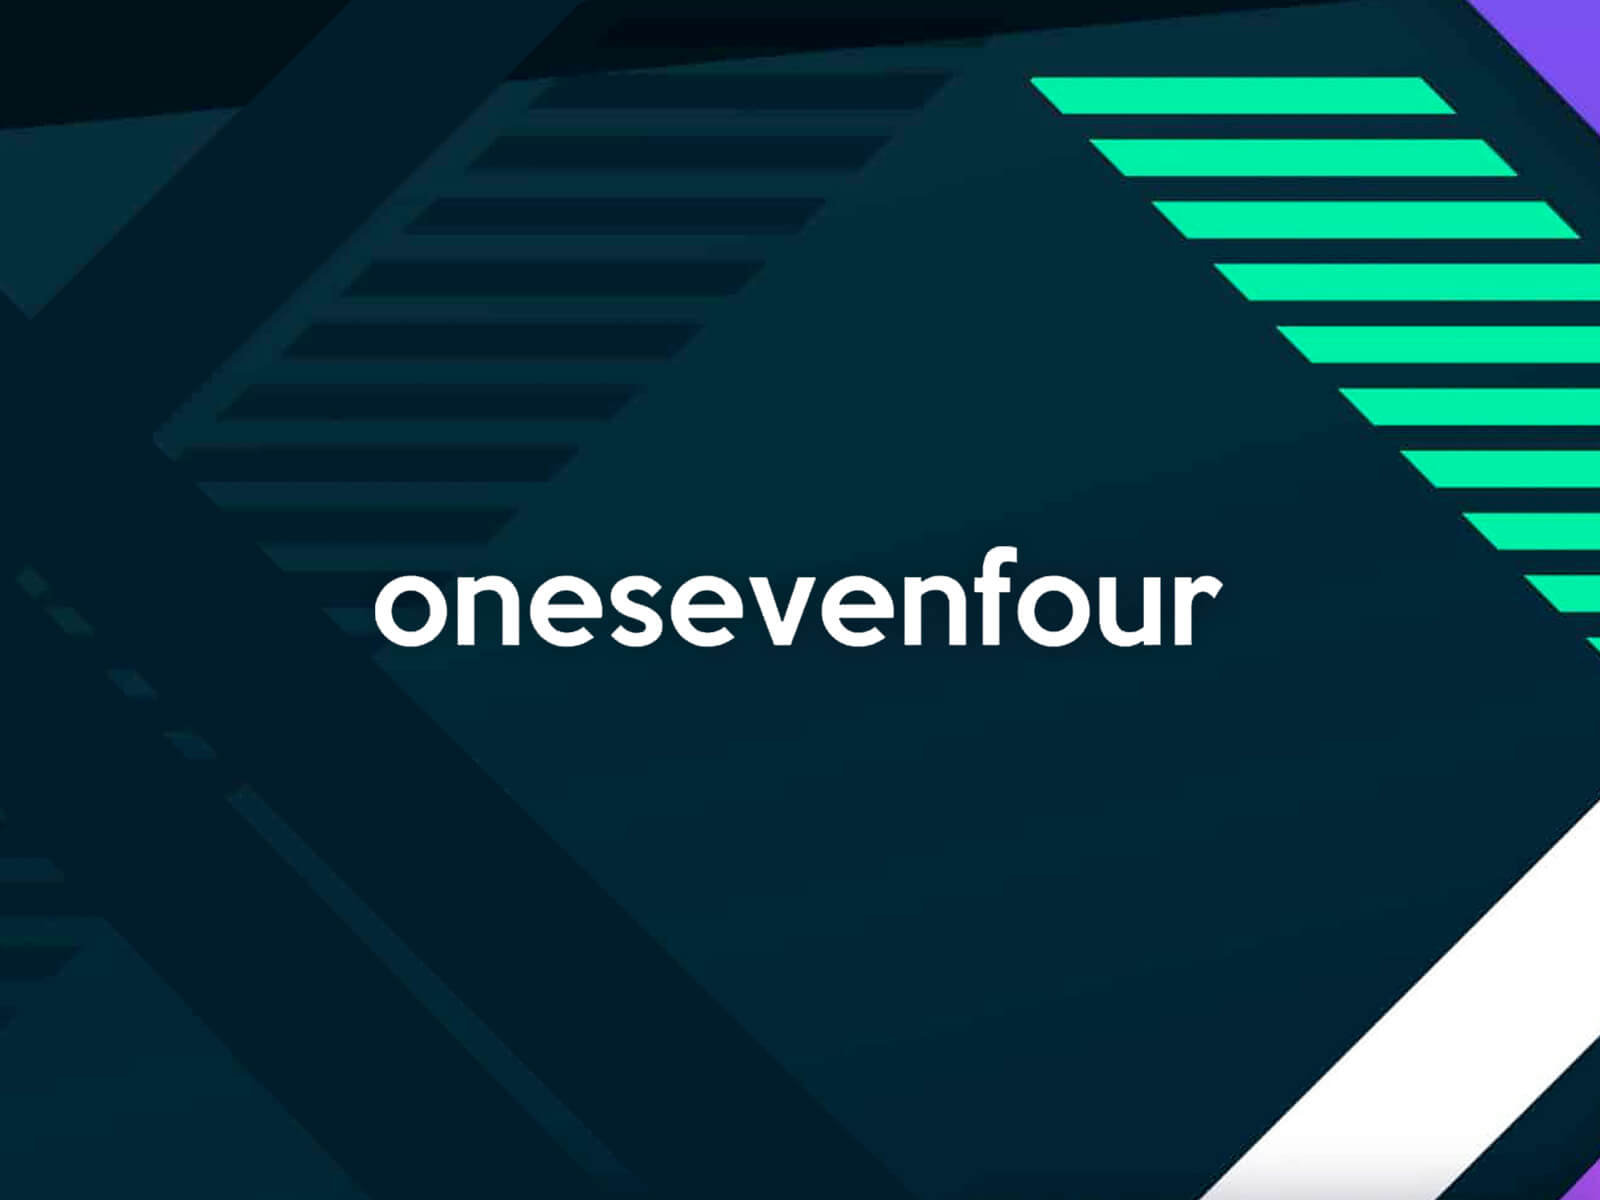 onesevenfour-003-oz-edm-feature-01-2020